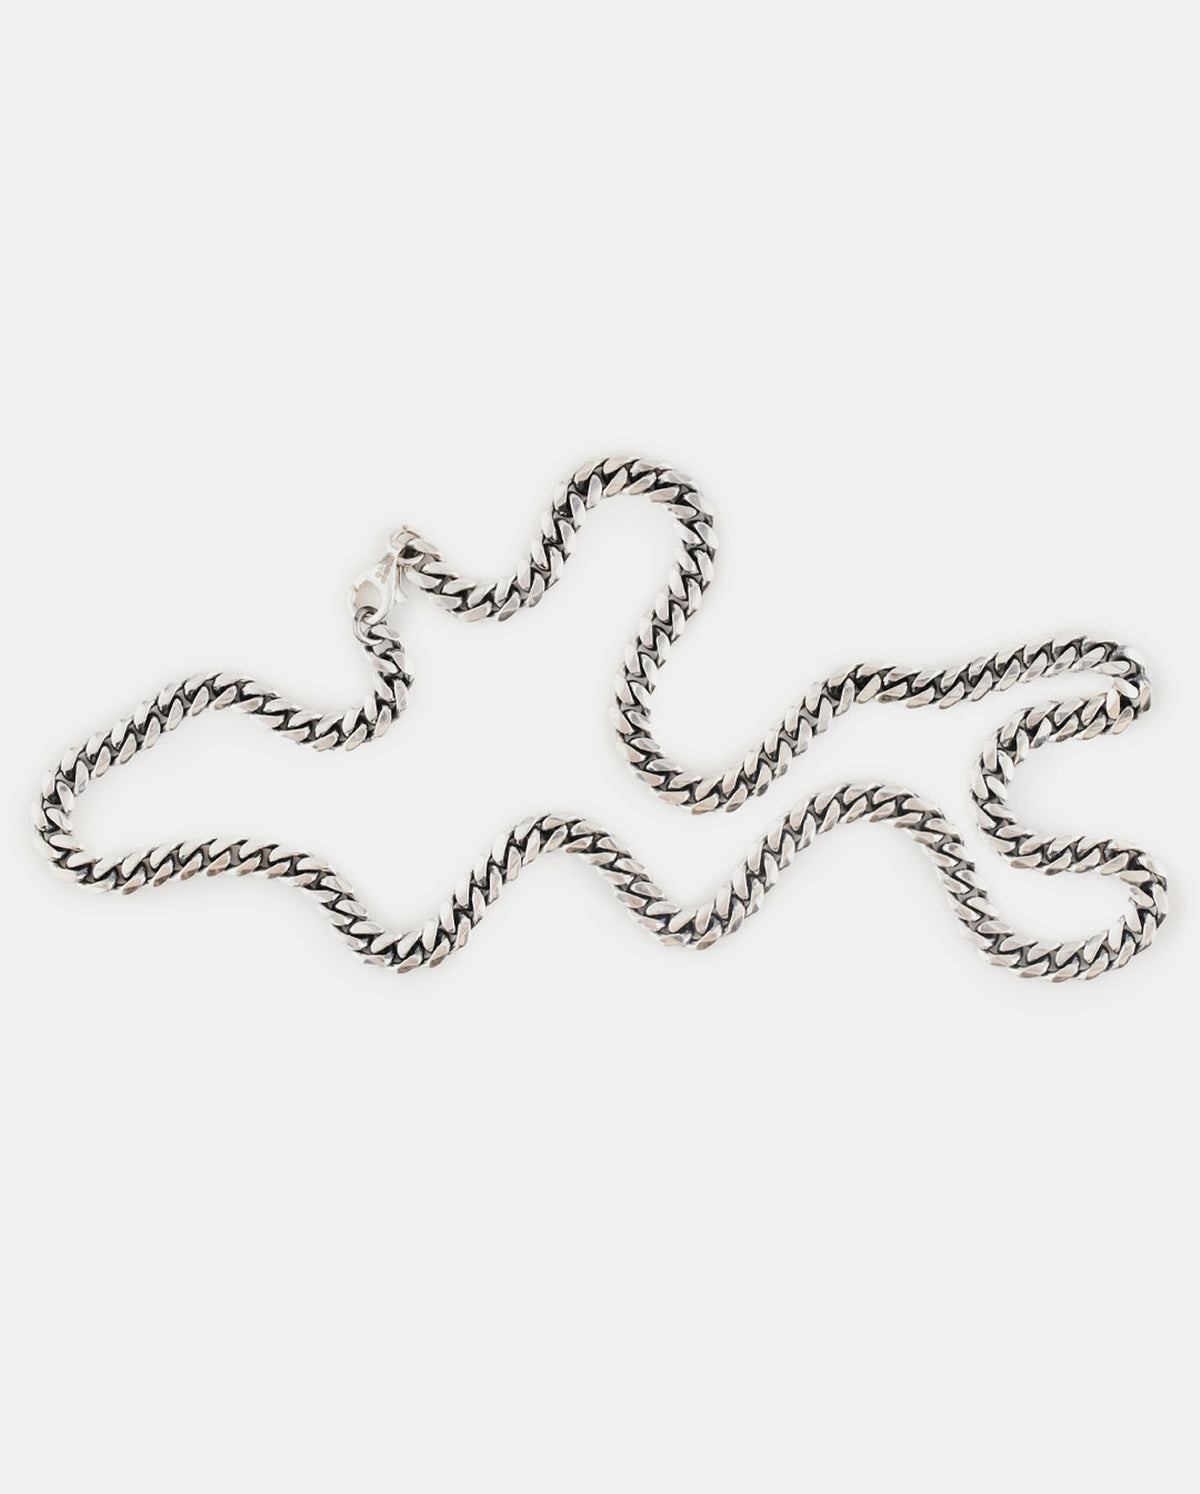 Silver Curb Chain